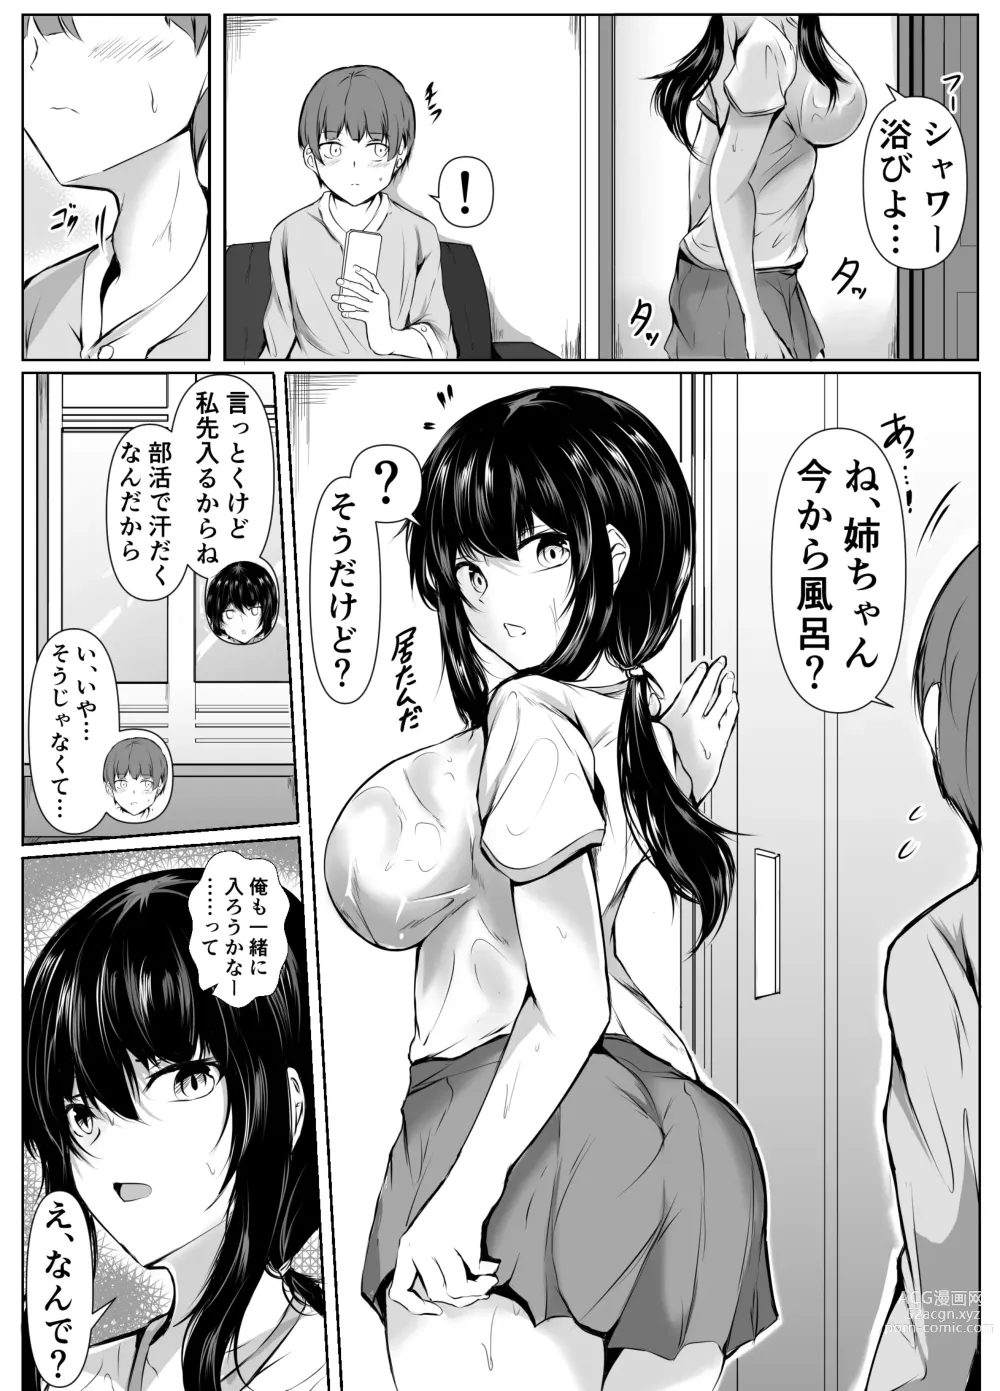 Page 3 of doujinshi Dosakusa ni Magirete Oshi ni Yowai Ane to Ofuro ni Haitta Kekka